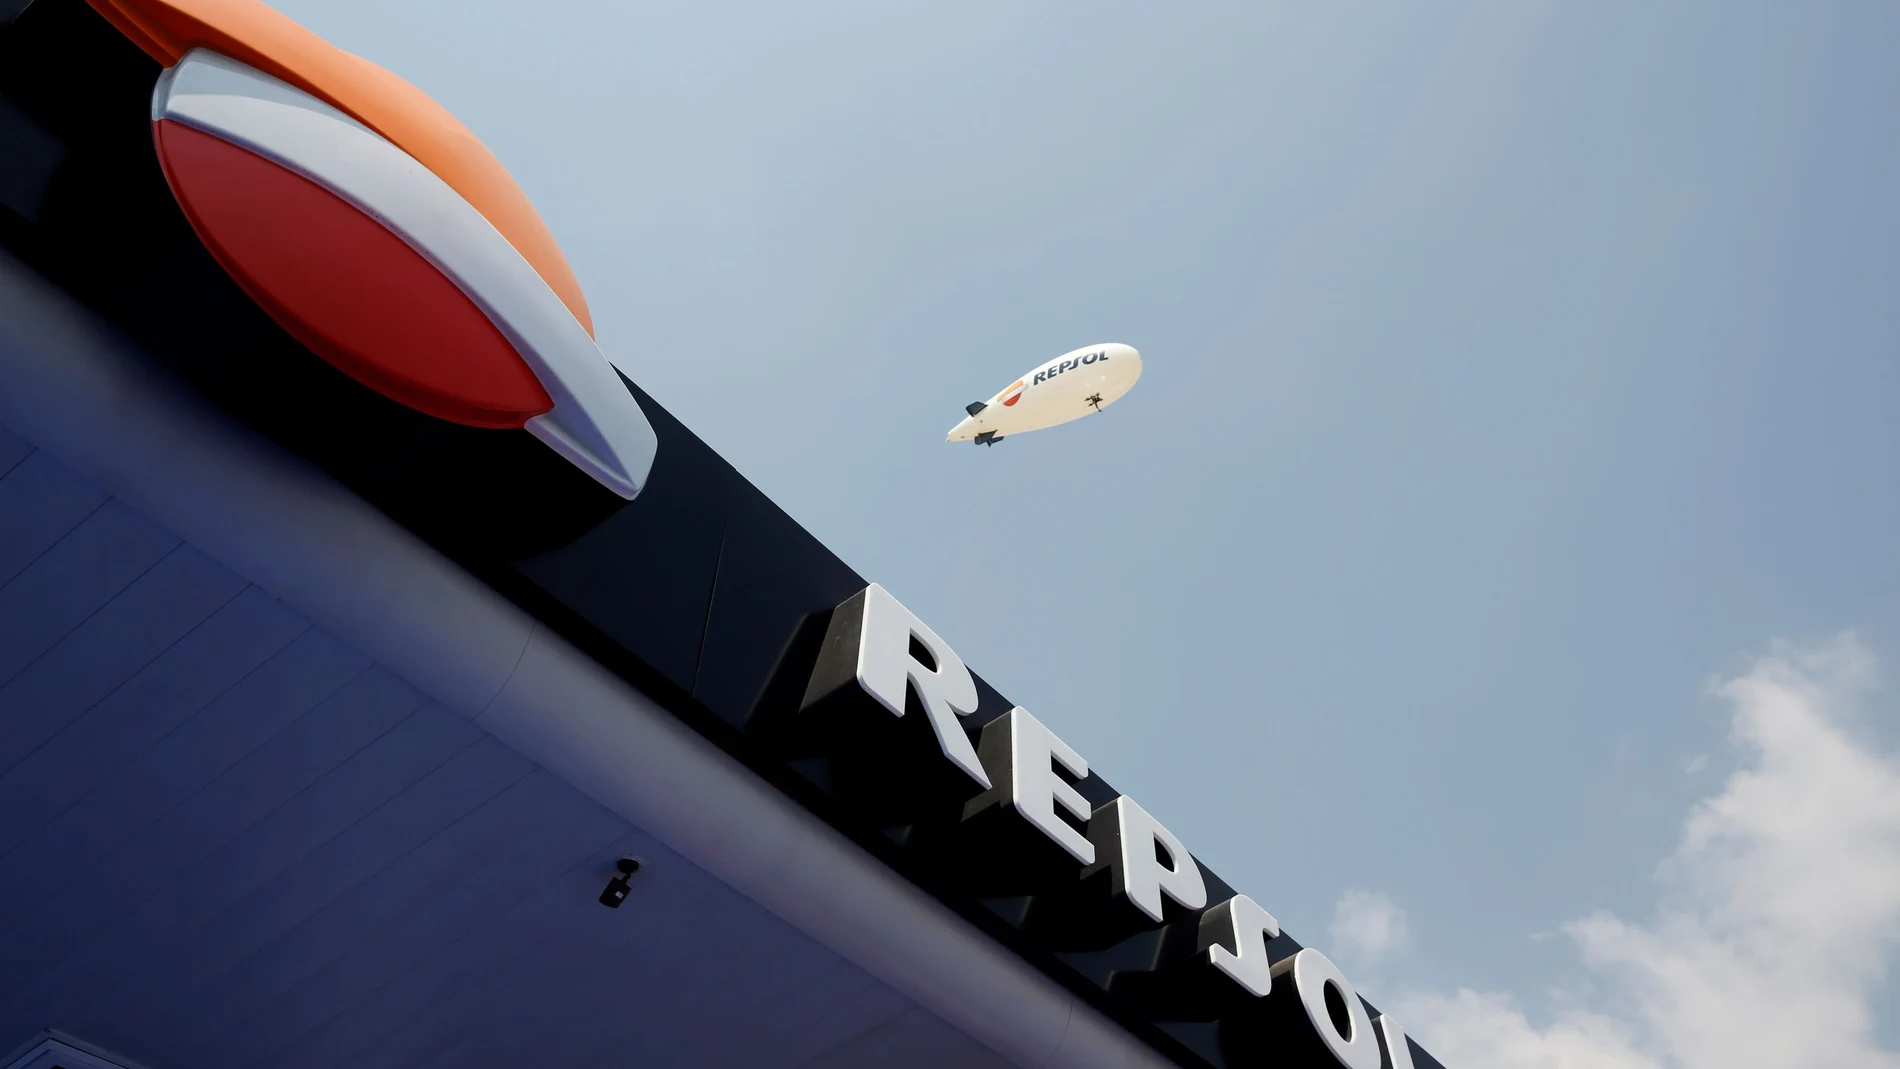 Un dirigible con el logo de Repsol sobrevuela una de sus estaciones de servicio